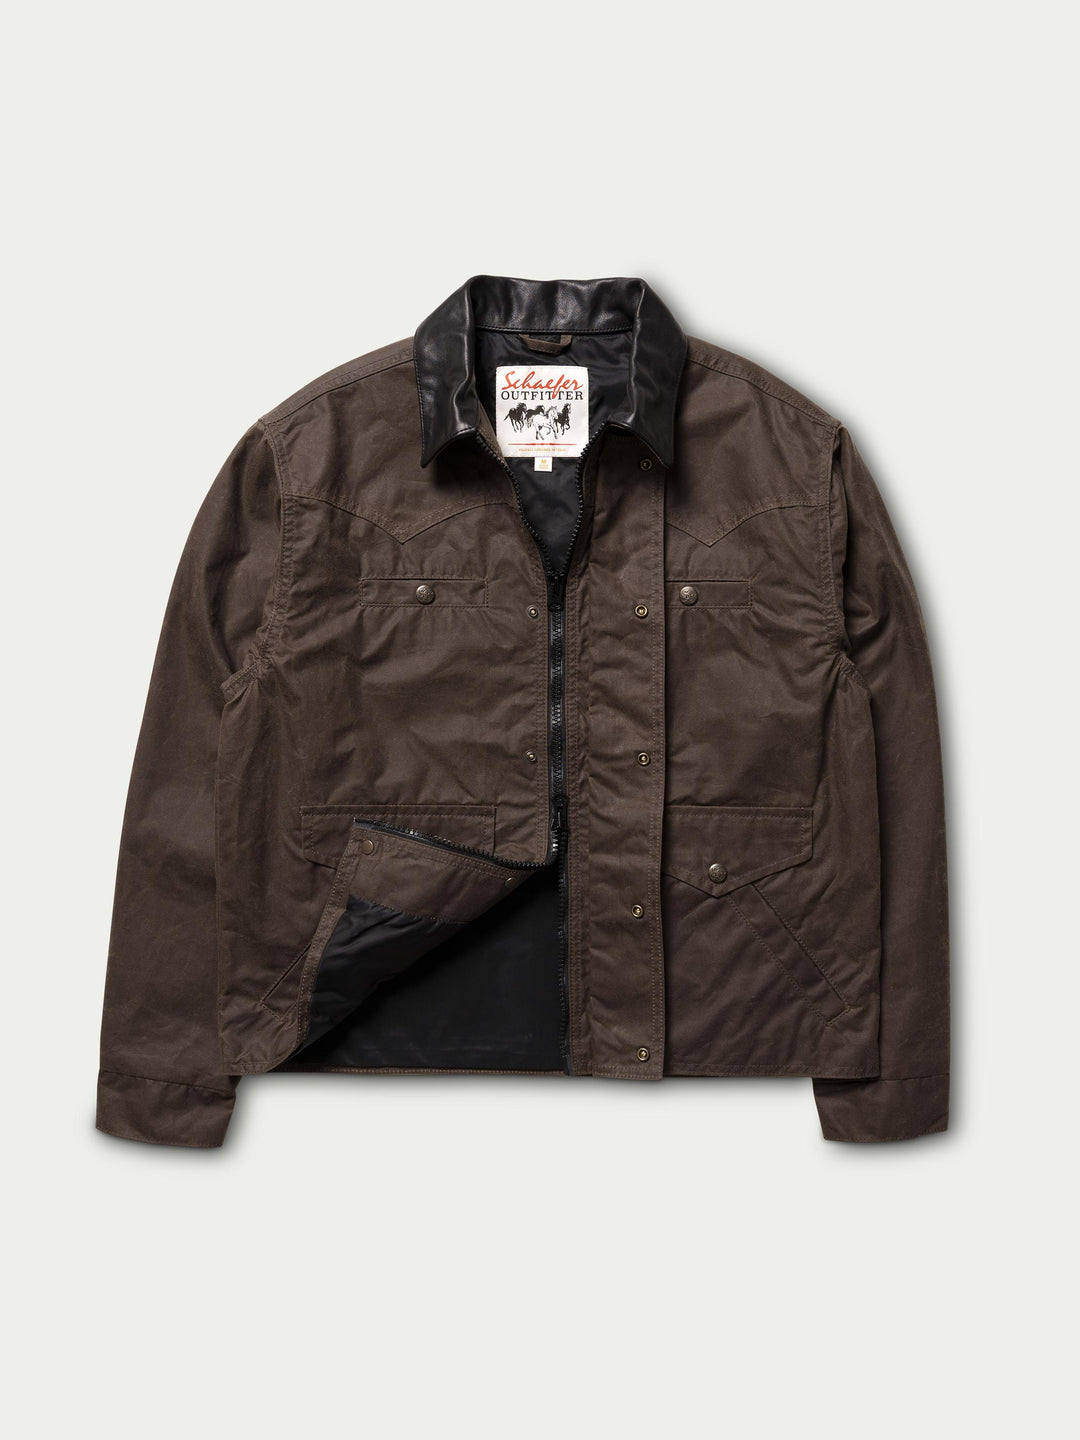 RangeWax® Summit Jacket - Schaefer Outfitter